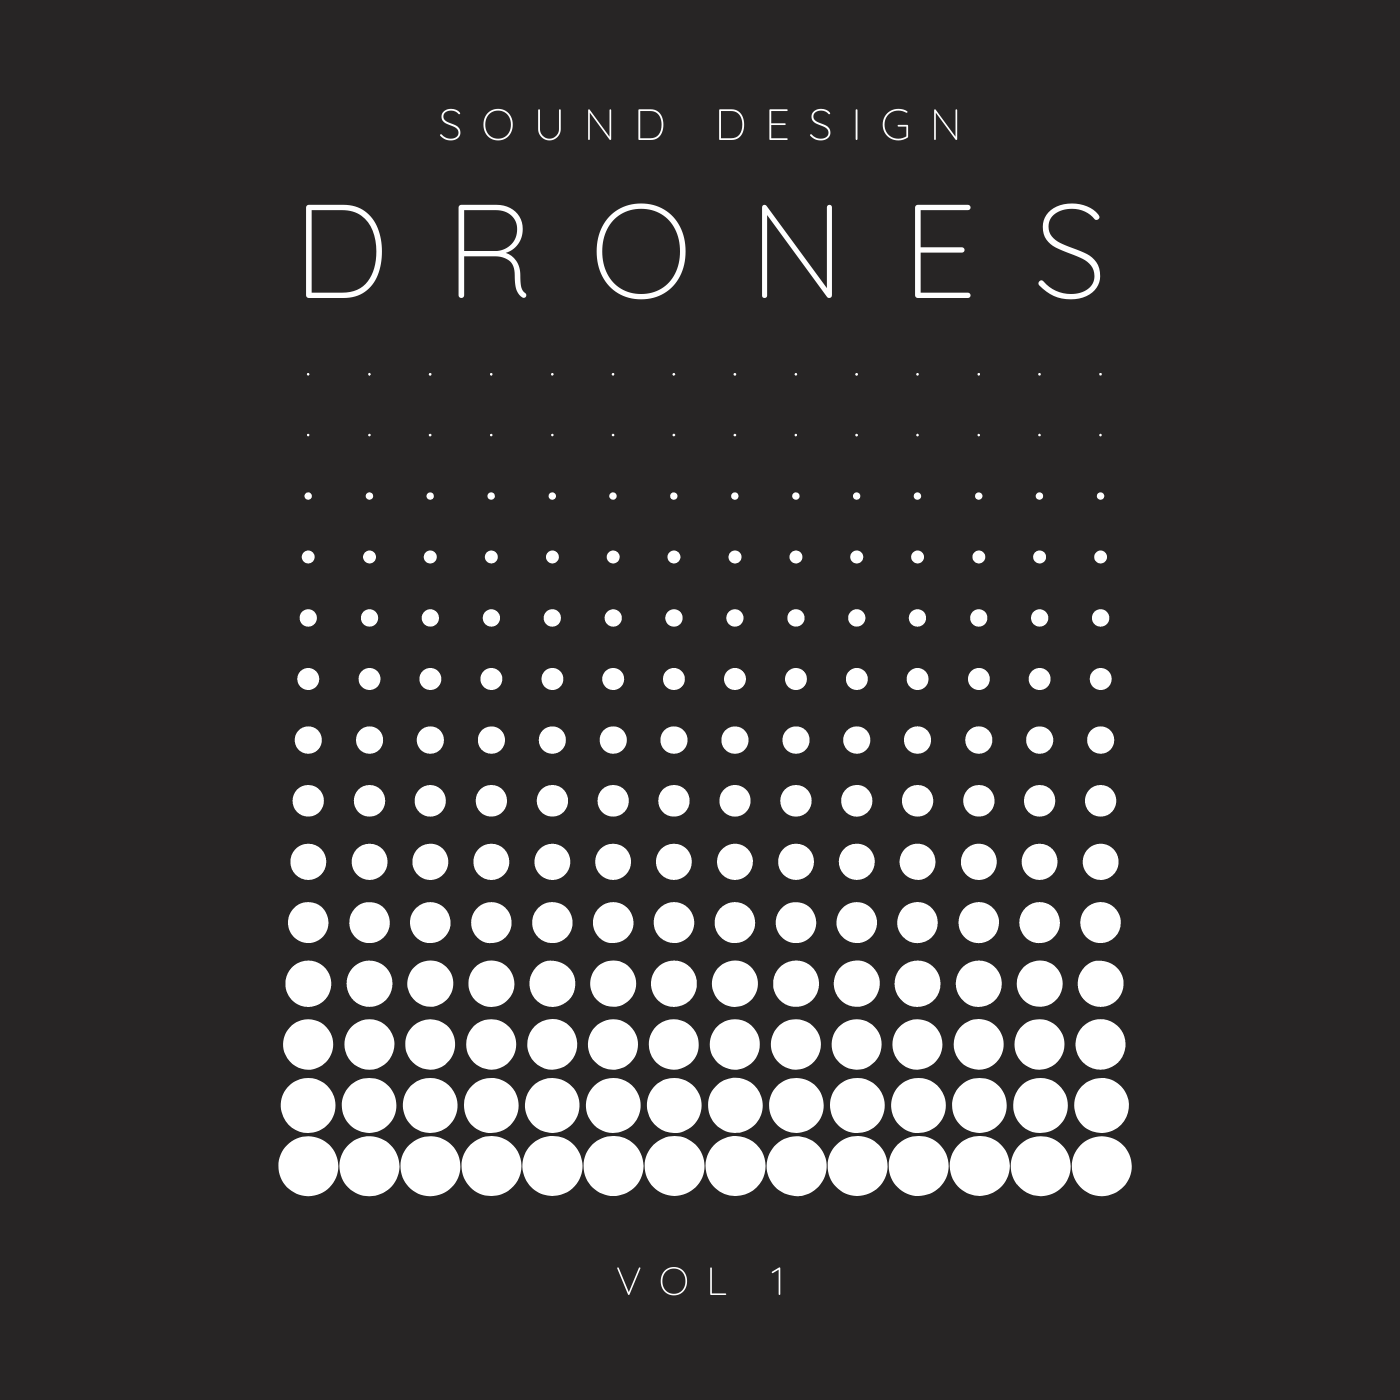 Drones Vol. 1